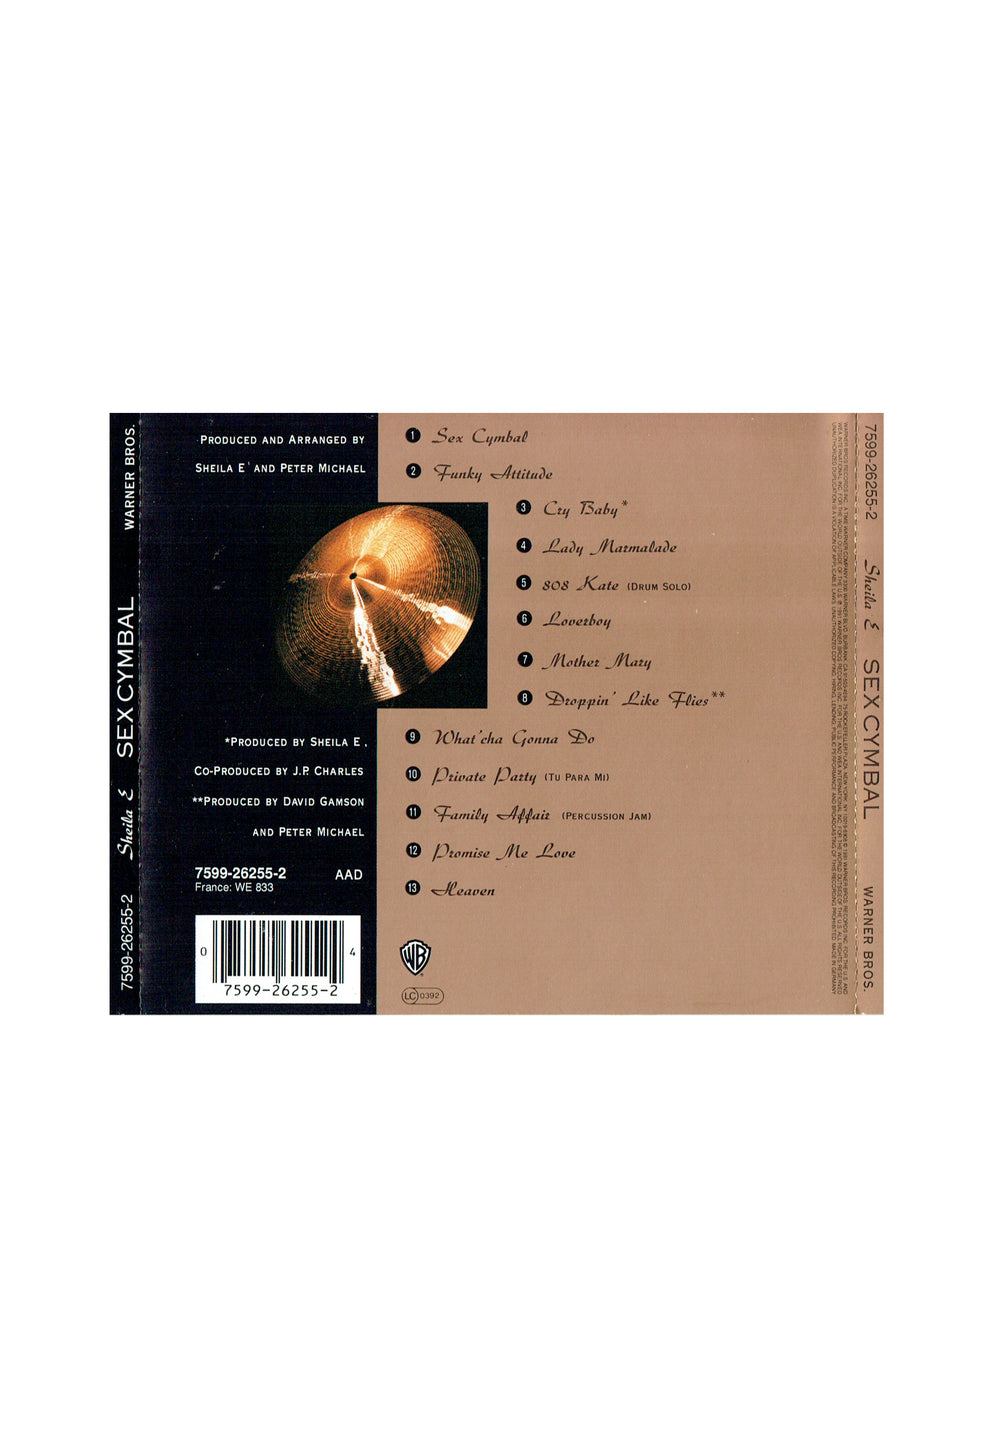 Prince – Sheila E & The E Train Writes Of Passage CD Album